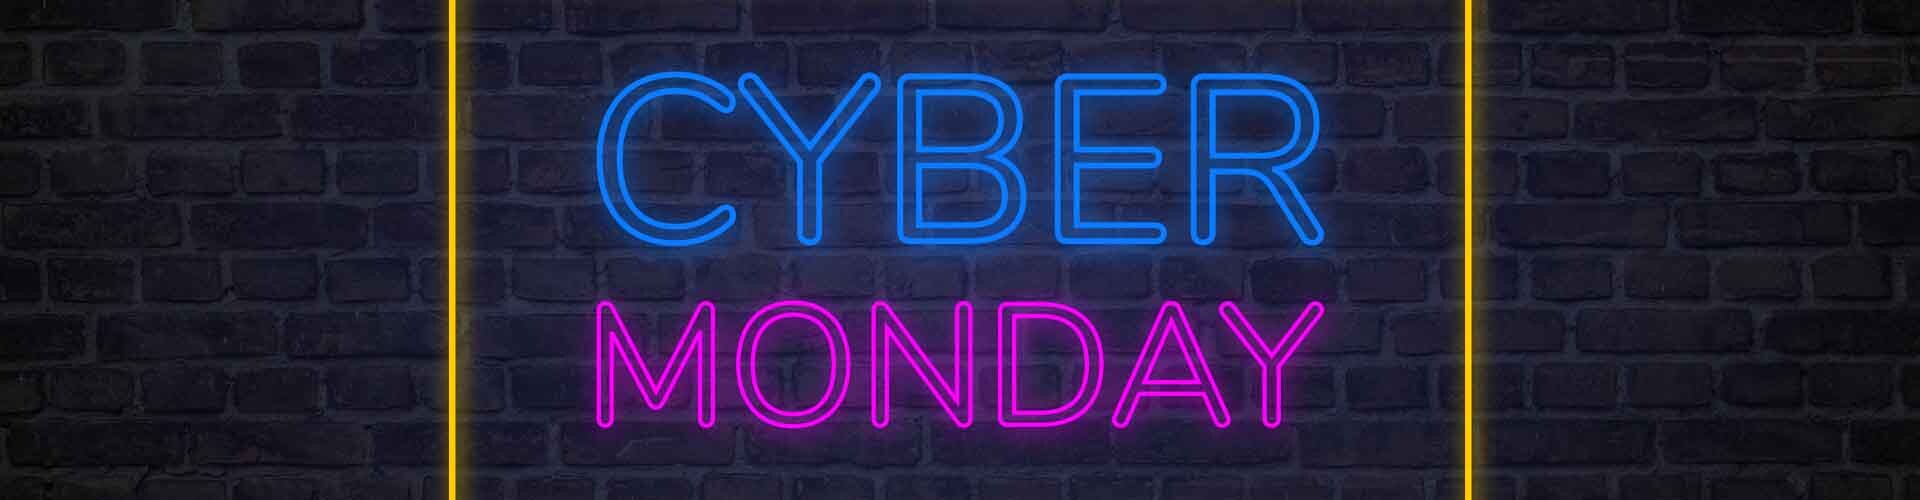 Cyber Monday BEARDGURU